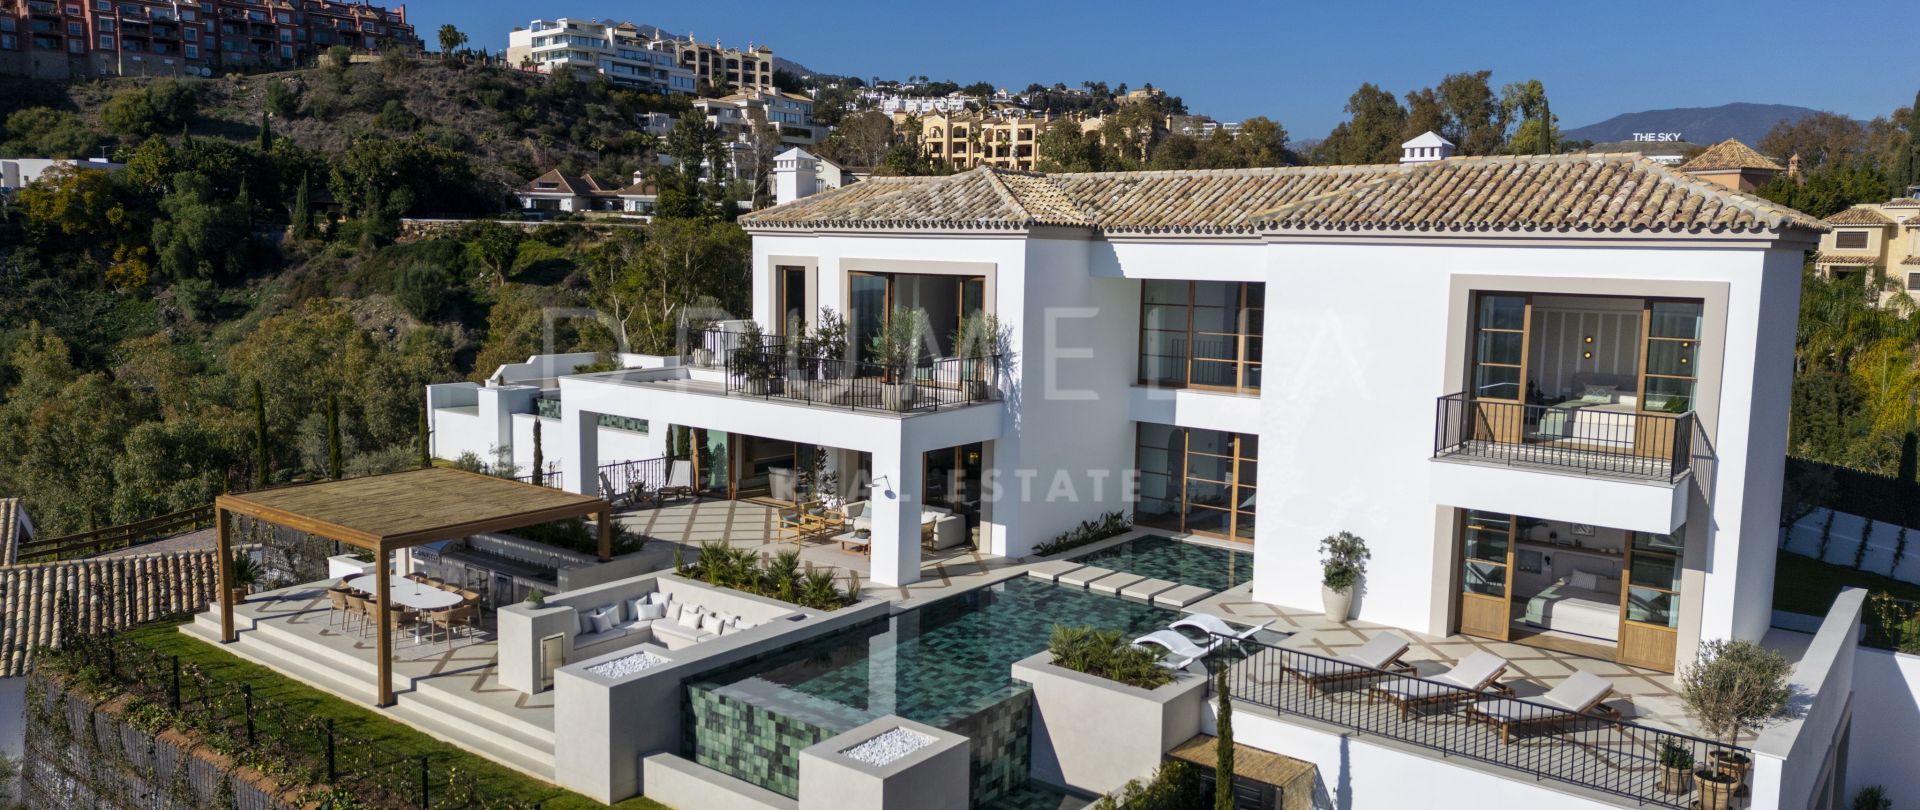 Extraordinär bostad i Hacienda-stil med panoramautsikt över havet, La Quinta